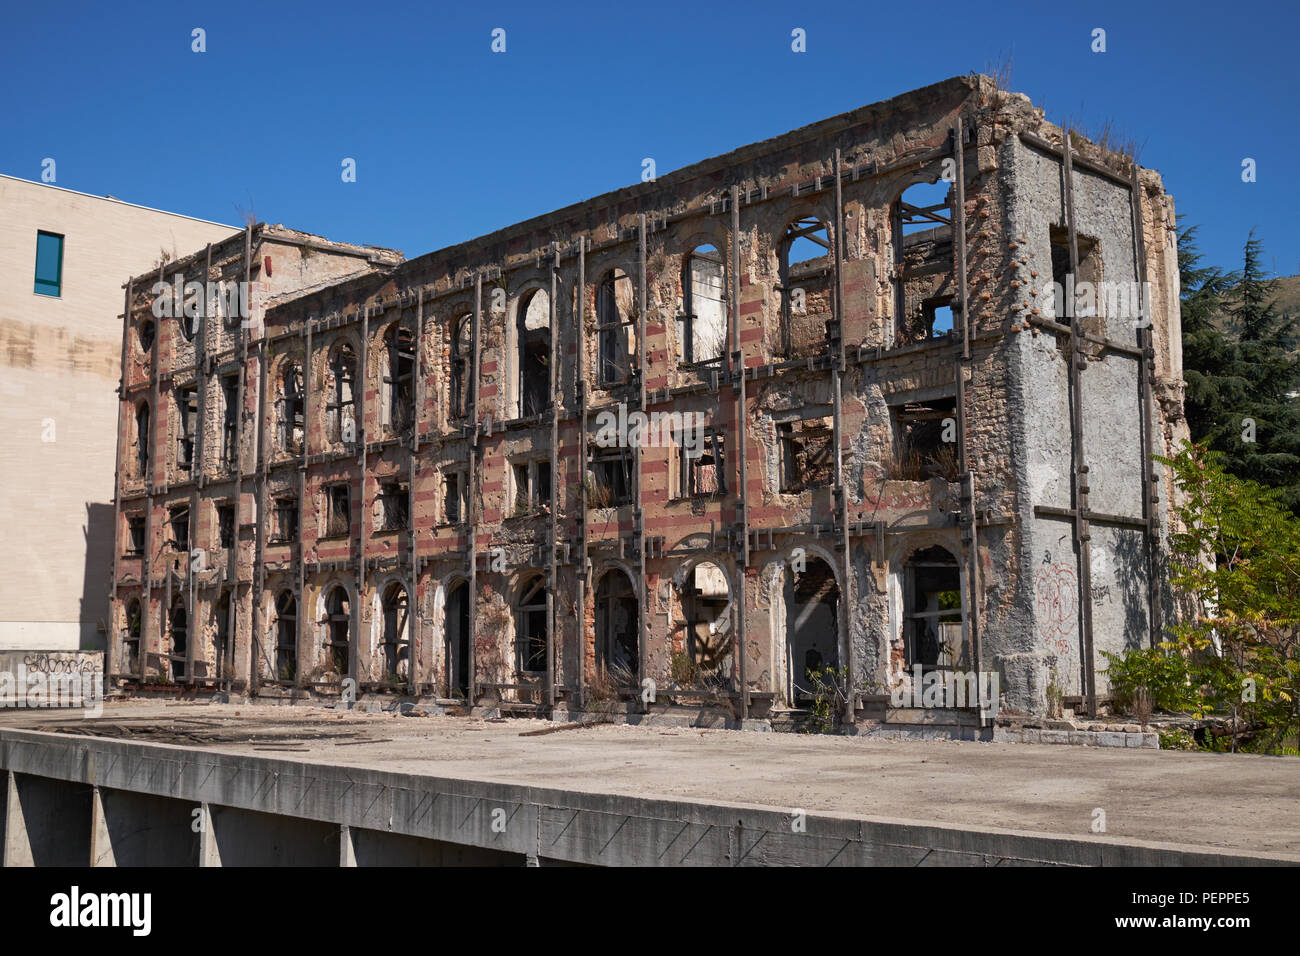 The ruins of the Hotel Neretva, nicknamed 'Tito's palace', at Mostar, Bosnia and Herzegovina. Stock Photo